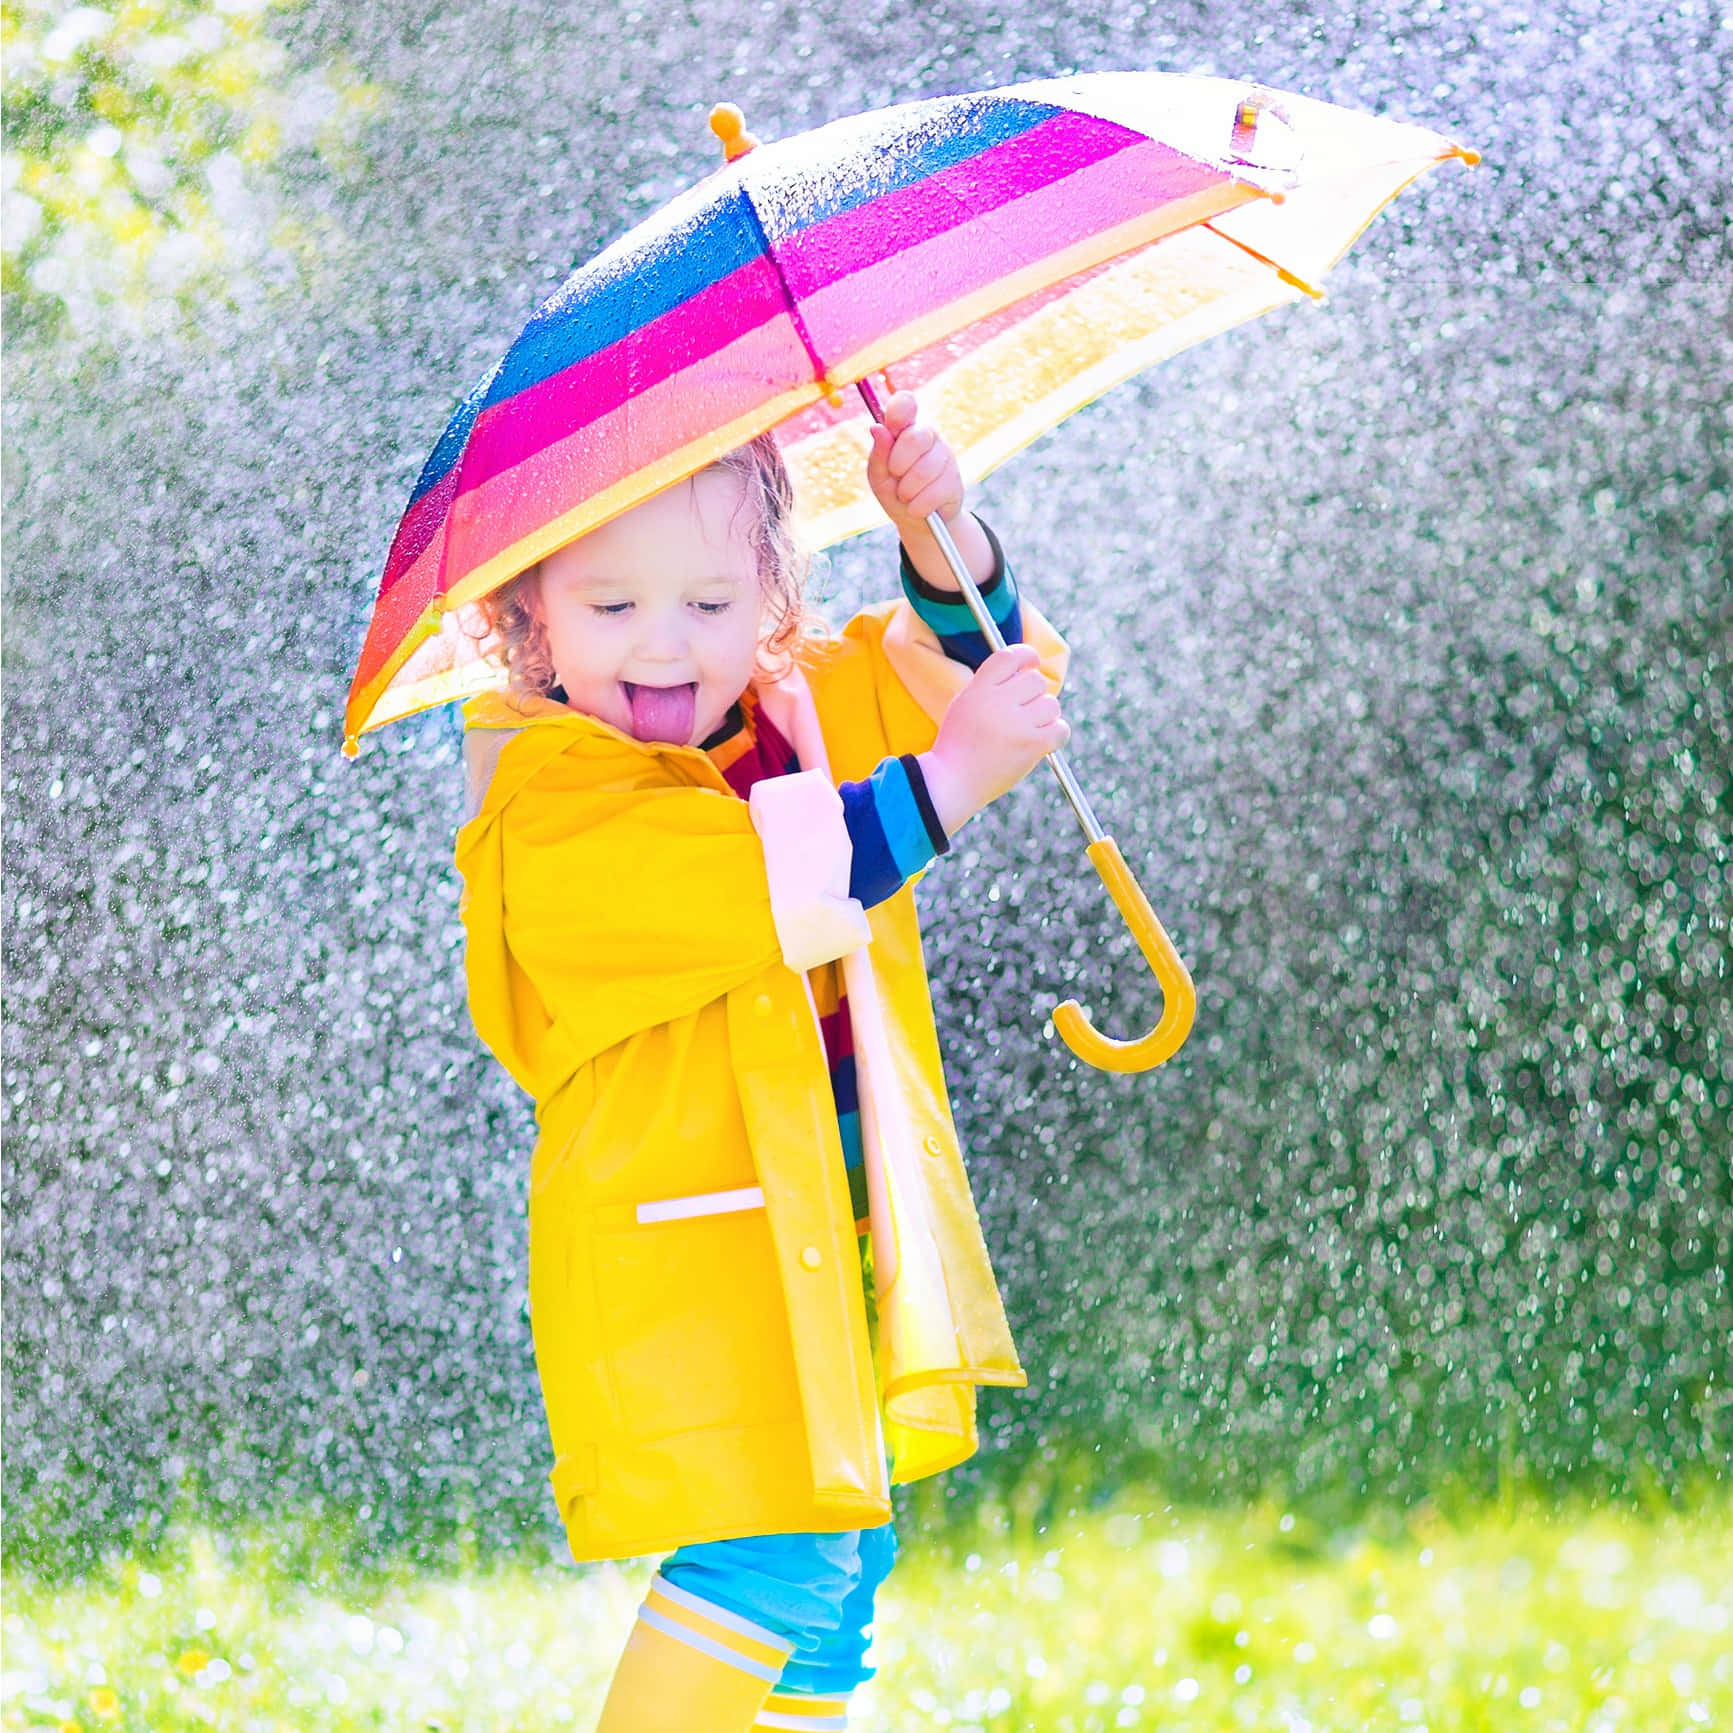 Immaginedi Una Bambina Felice Con L'ombrello In Una Giornata Di Pioggia